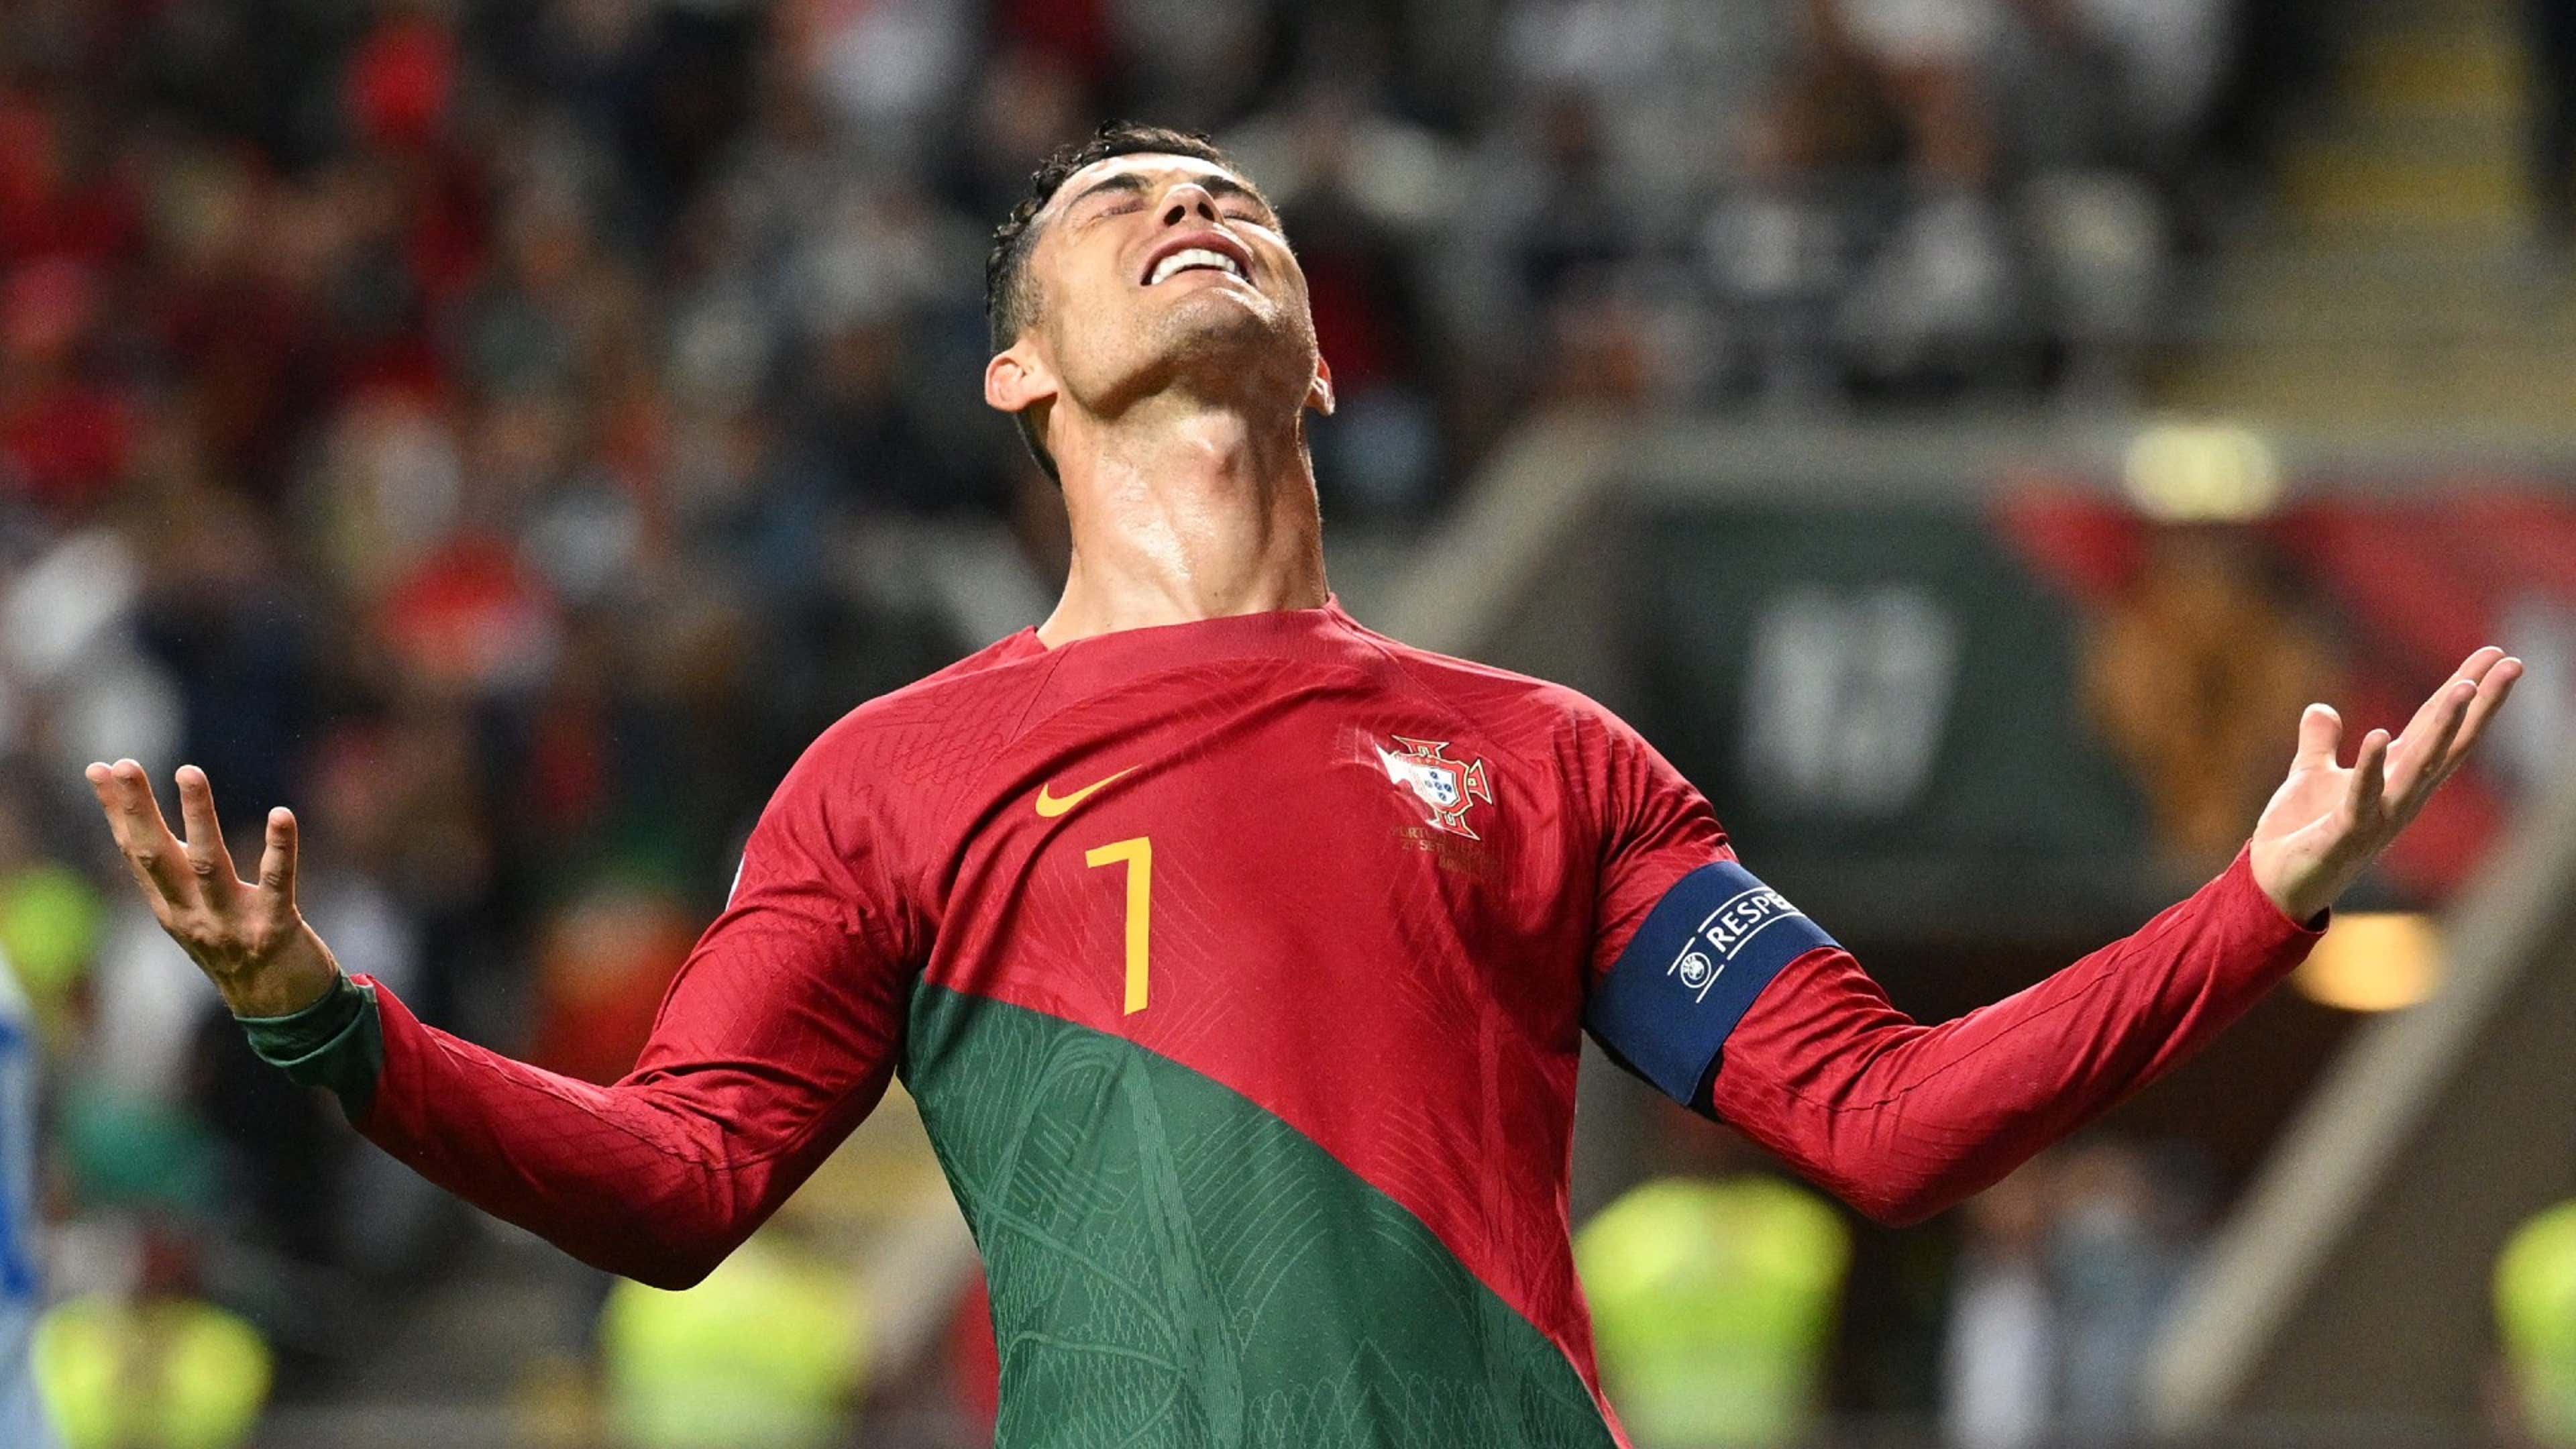 Portugal 4 x 0 Nigéria  Amistosos de seleções: melhores momentos